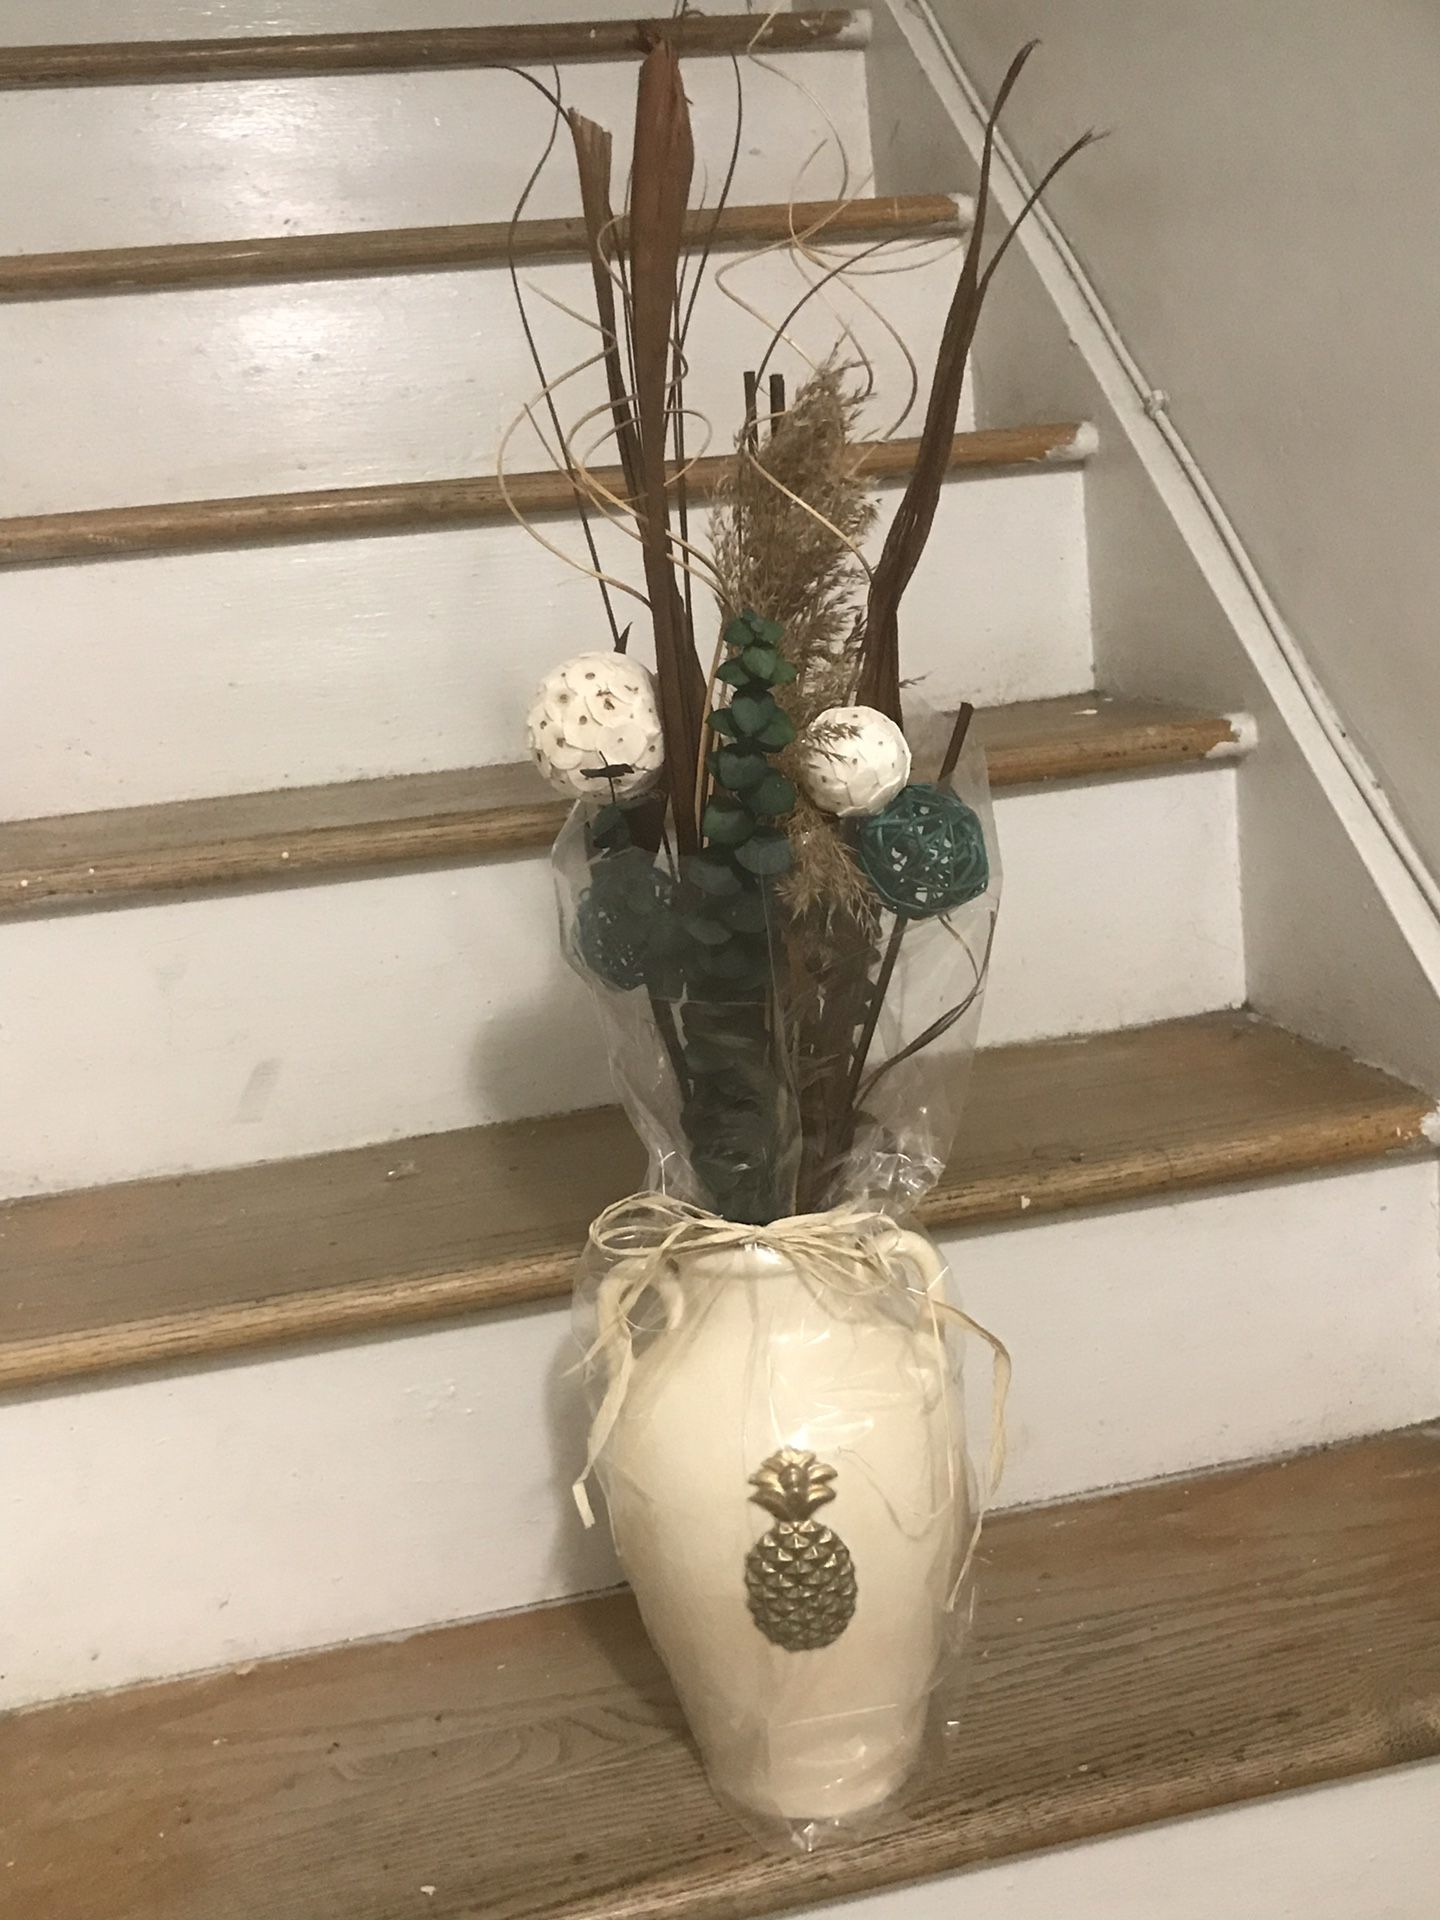 New flower vase